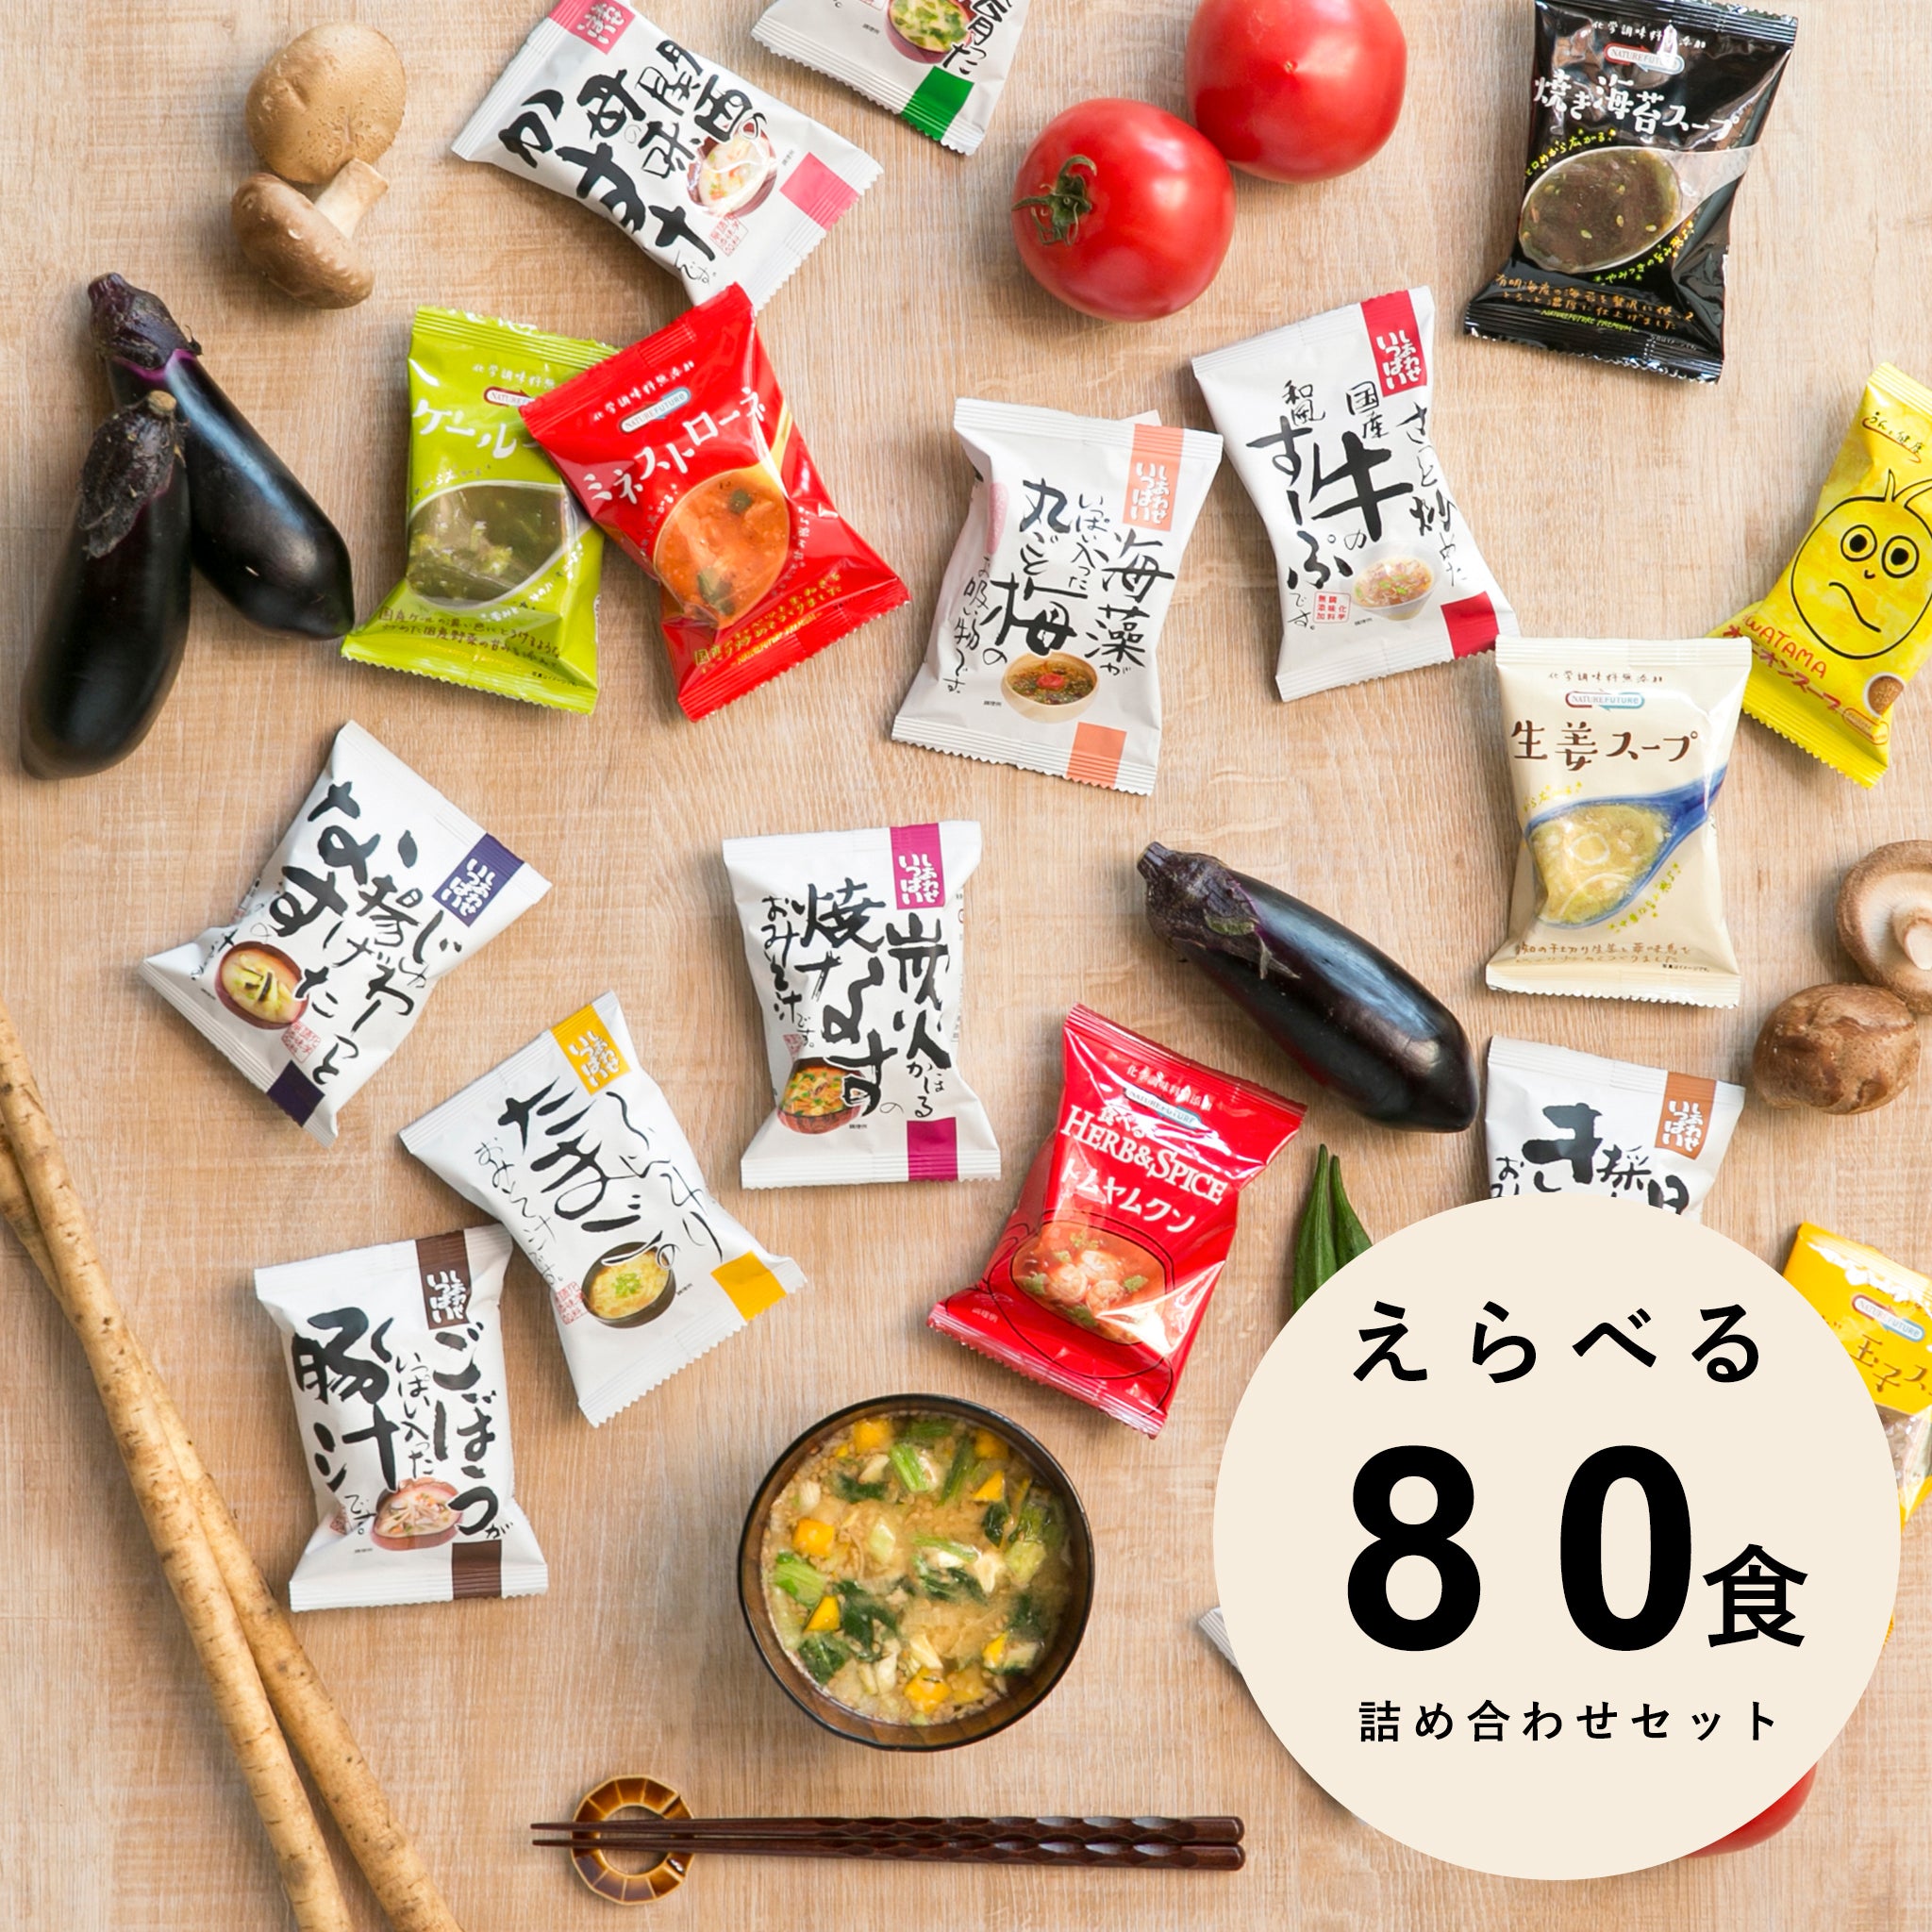 嶋ノ屋　Cosmos　Freeze-dried　コスモス食品　Selectable　set　food　miso　meals　80　soup　オンラインストア